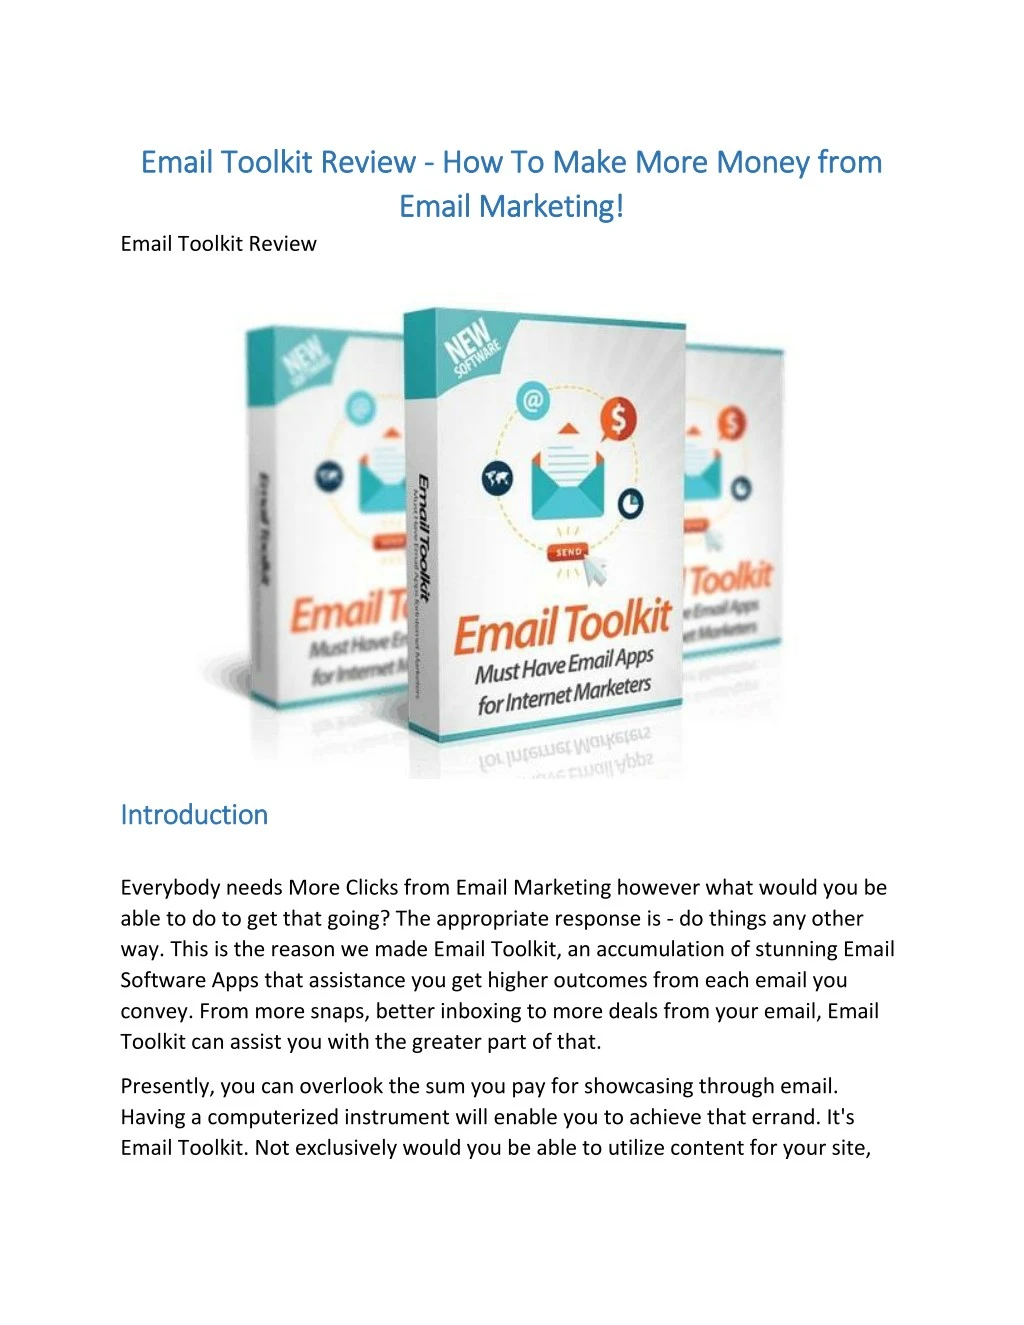 email toolkit review email toolkit review